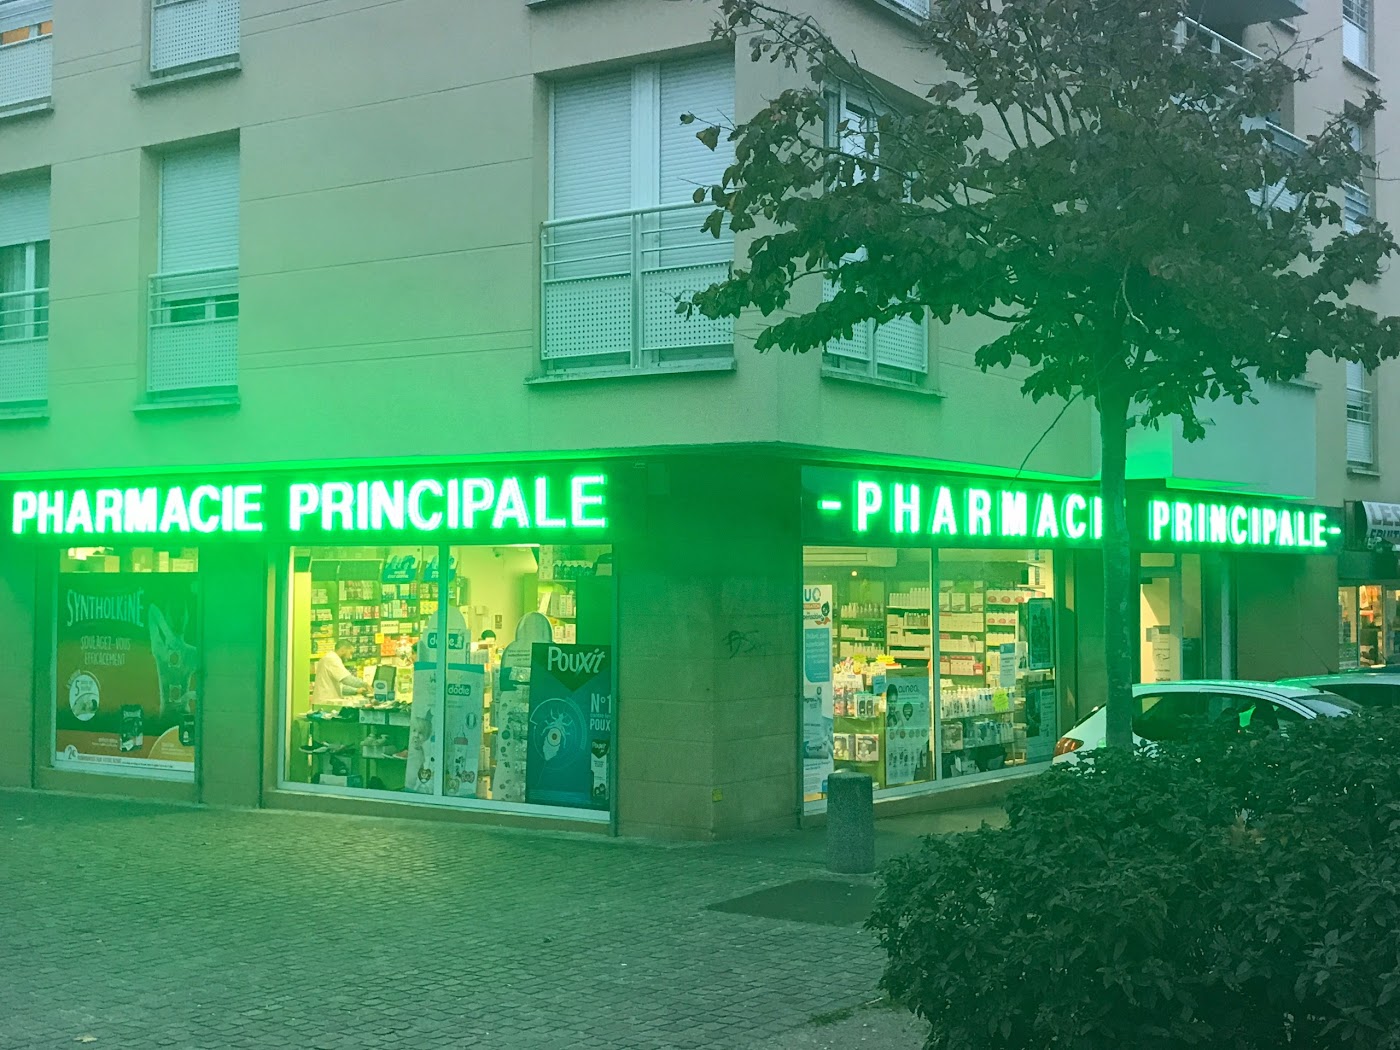 Pharmacie Principale de Chanteloup Les Vignes.